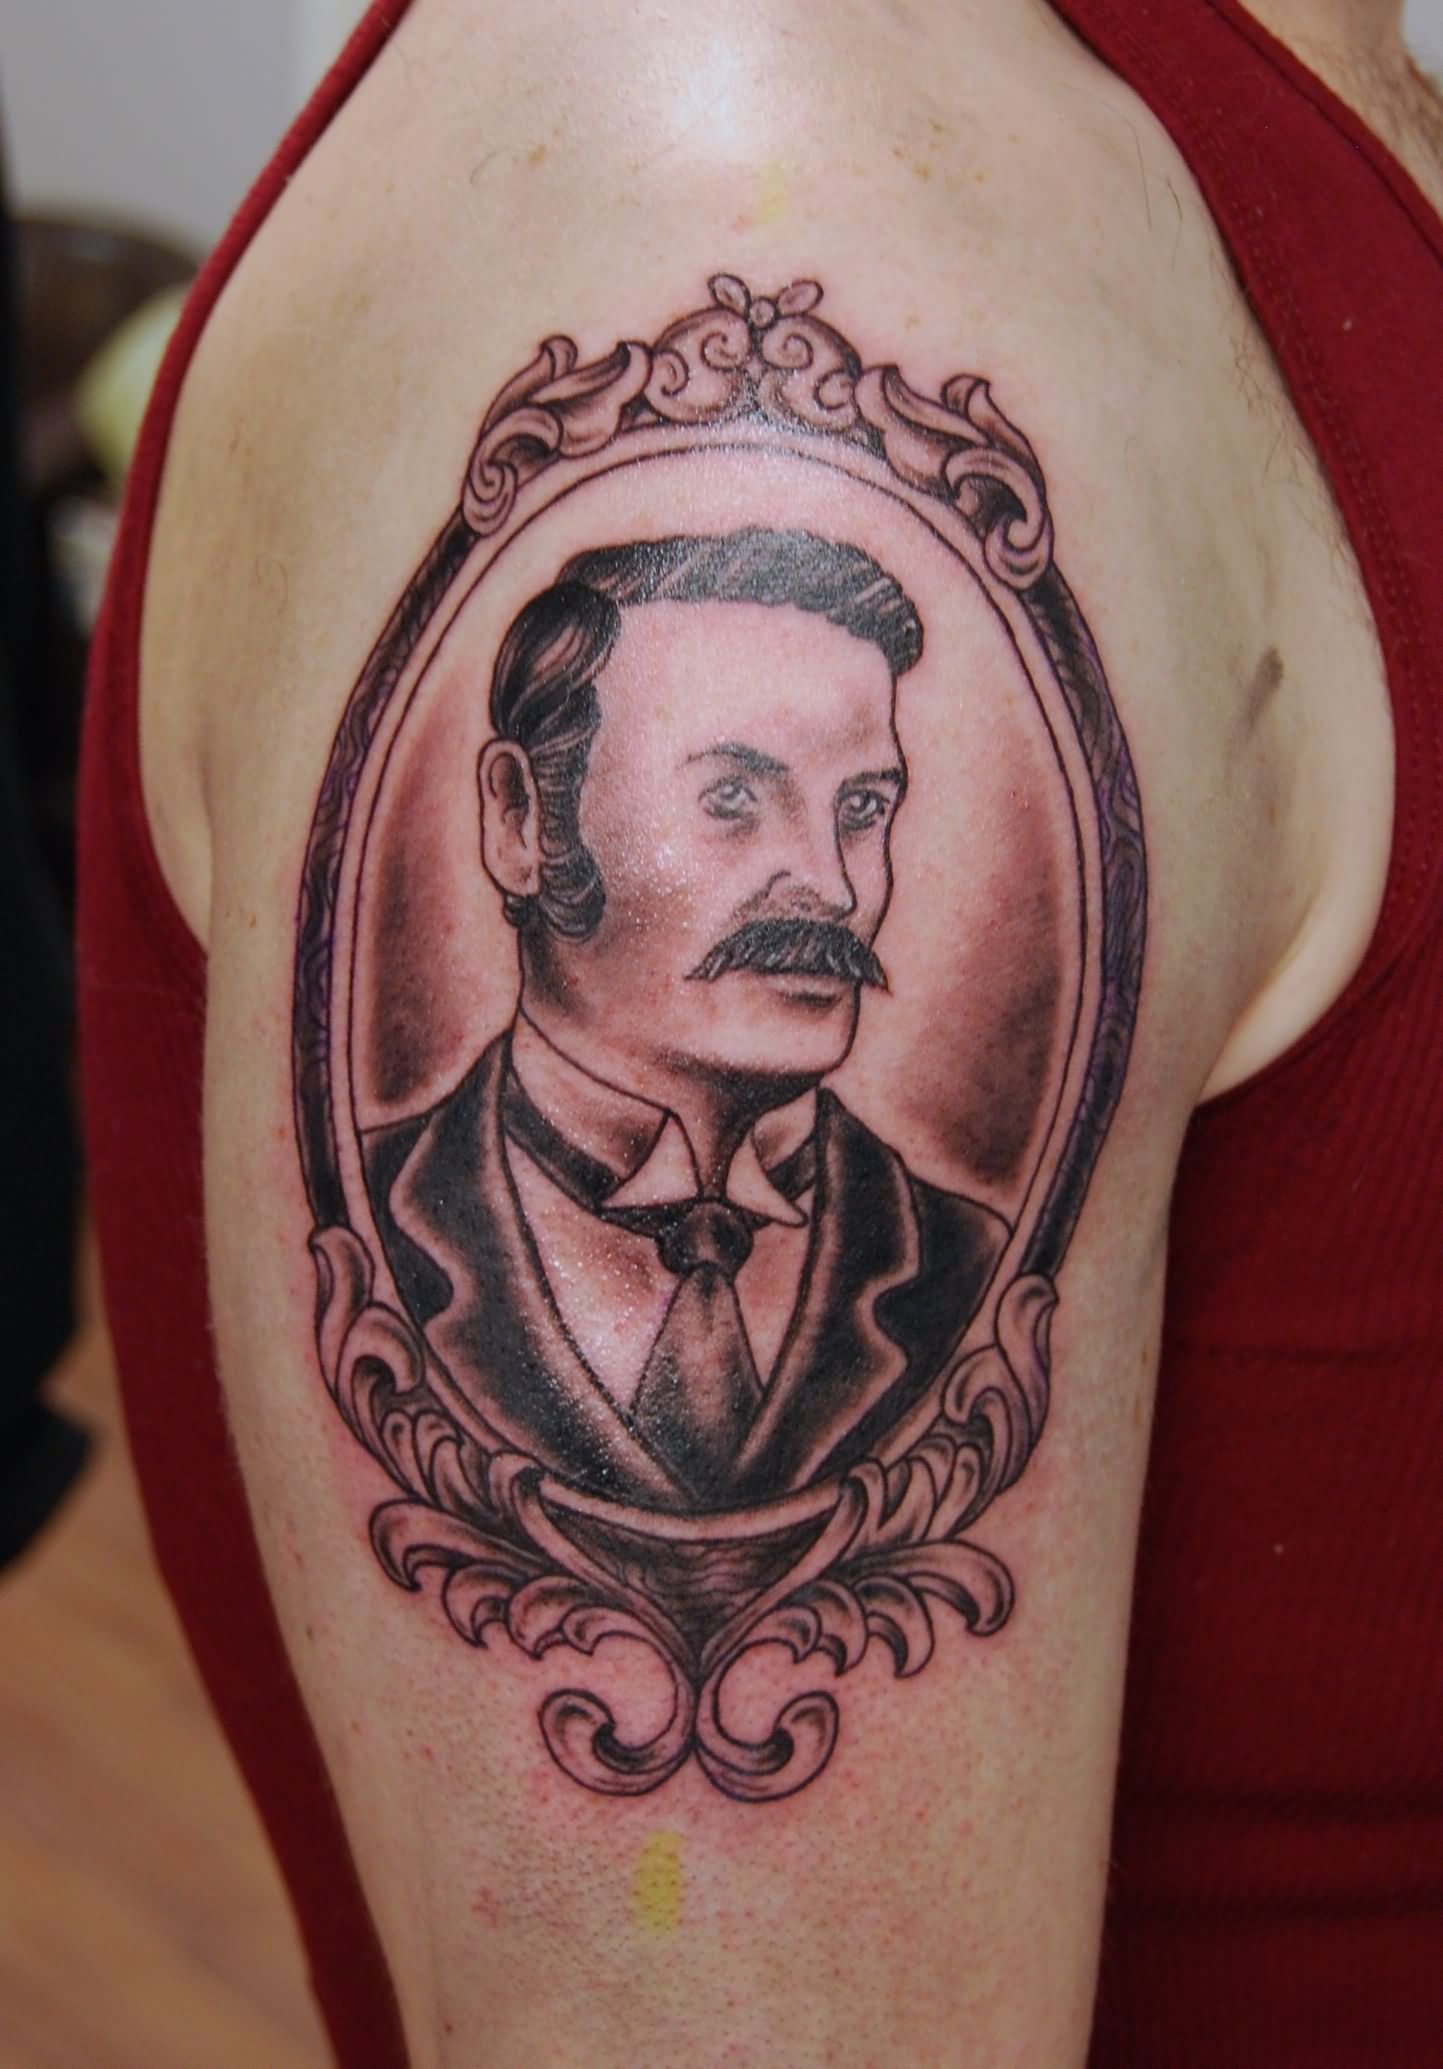 Black Ink Man Portrait In Frame Tattoo On Right Shoulder